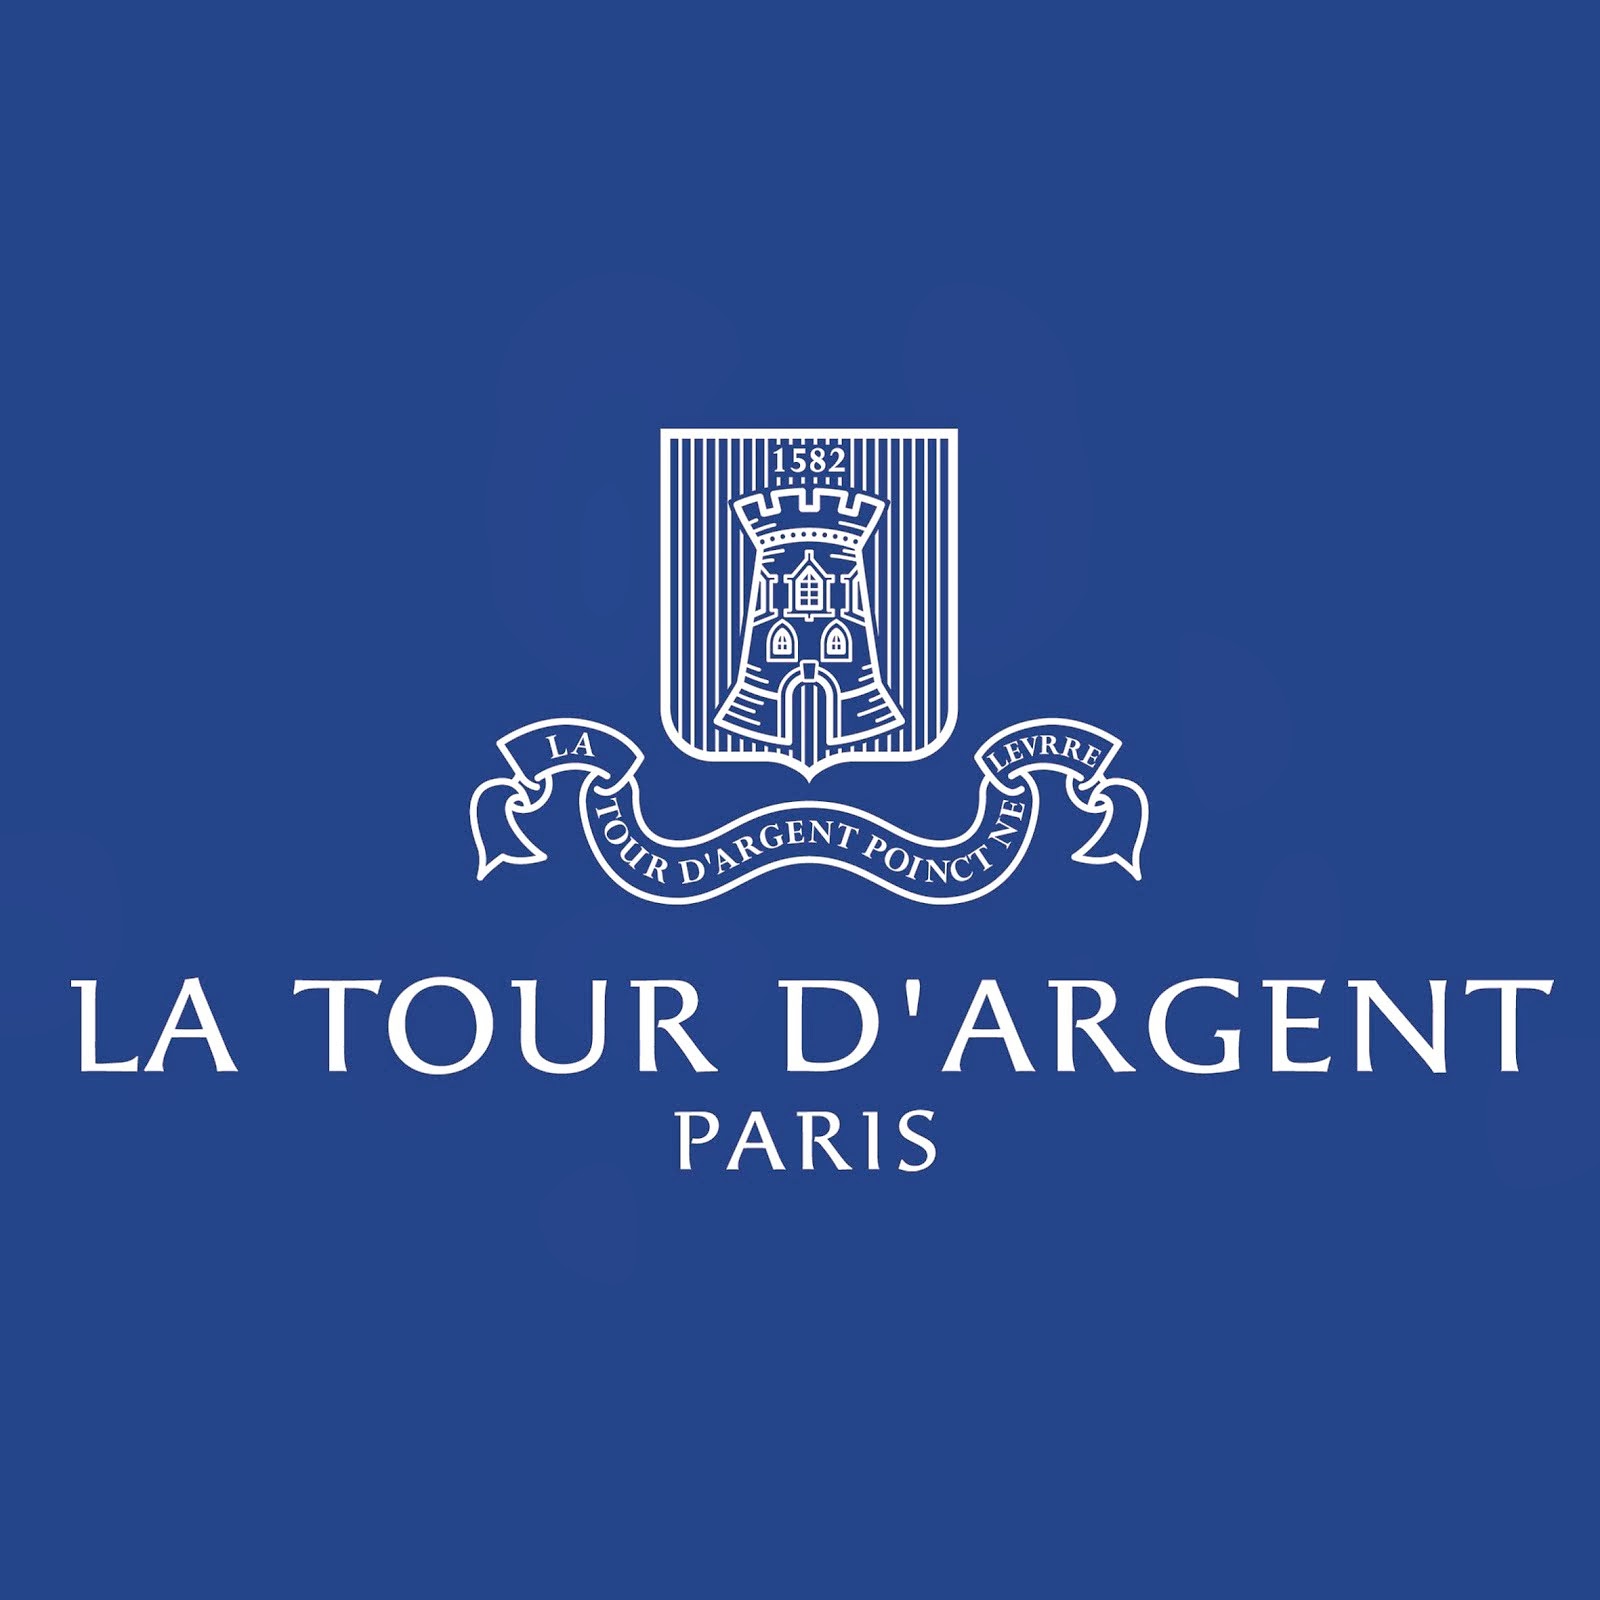 EN TUS VIAJES A PARÍS VISITA "RESTAURANT LA TOUR D'ARGENT